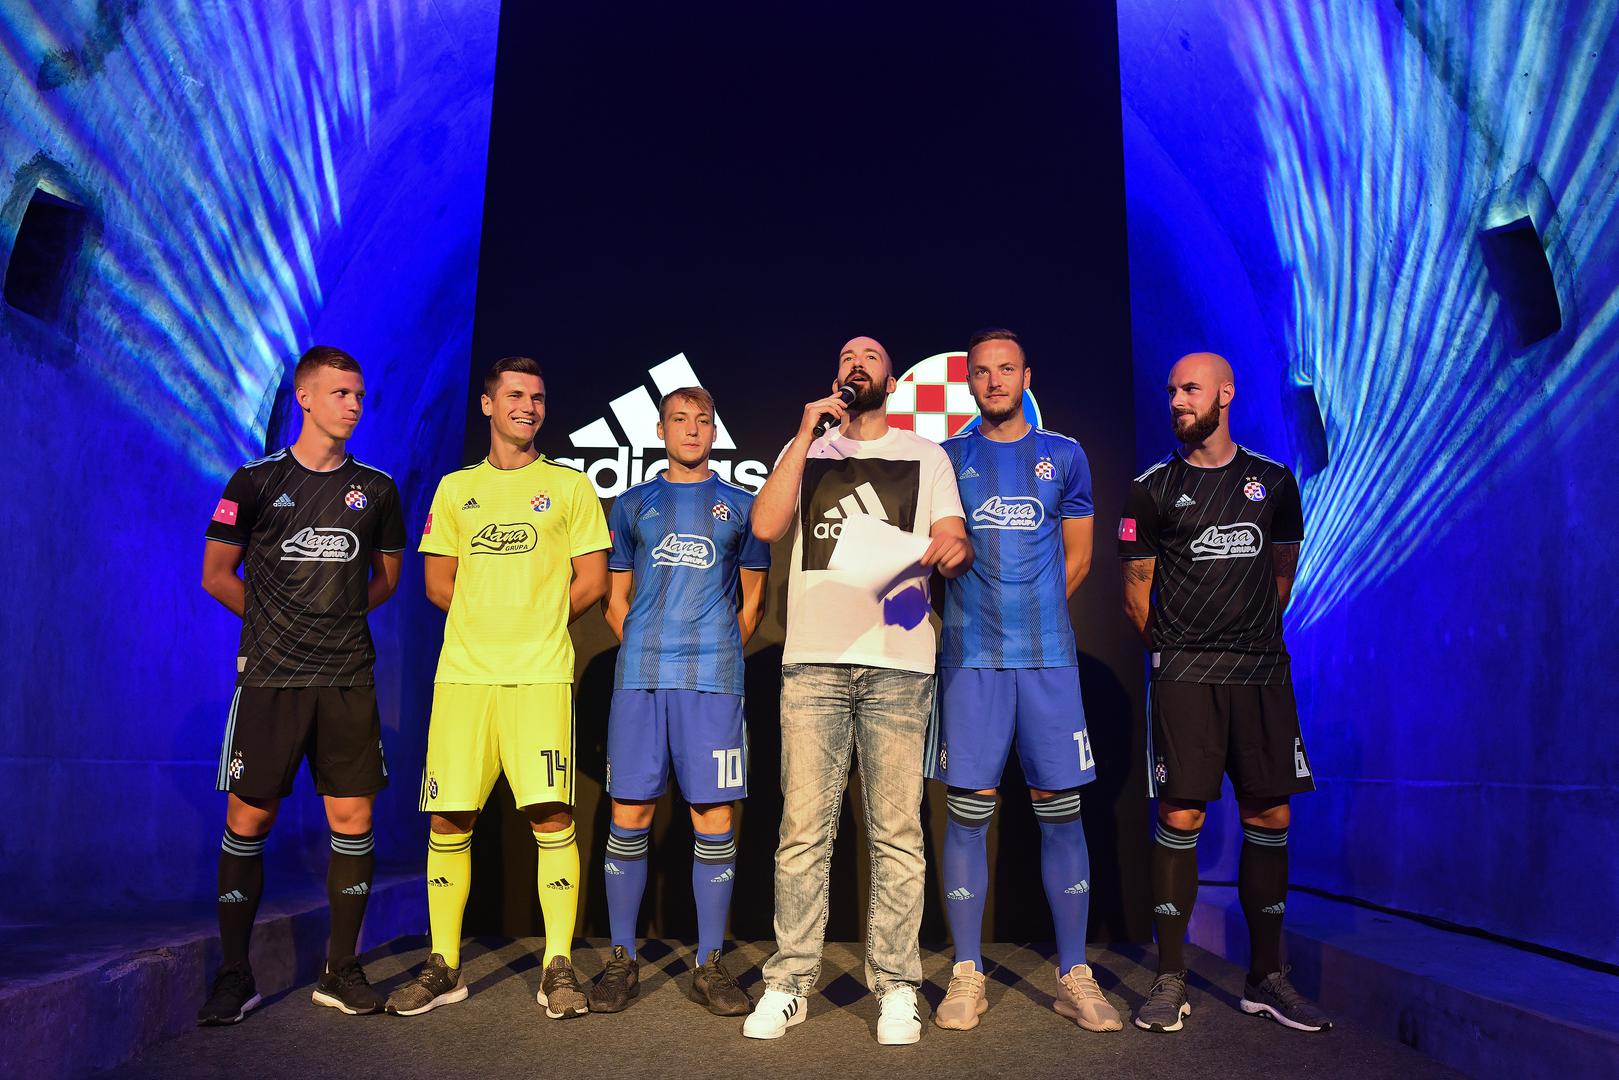 Dinamo je u tunelu Grič predstavio novi adidasov dres.

